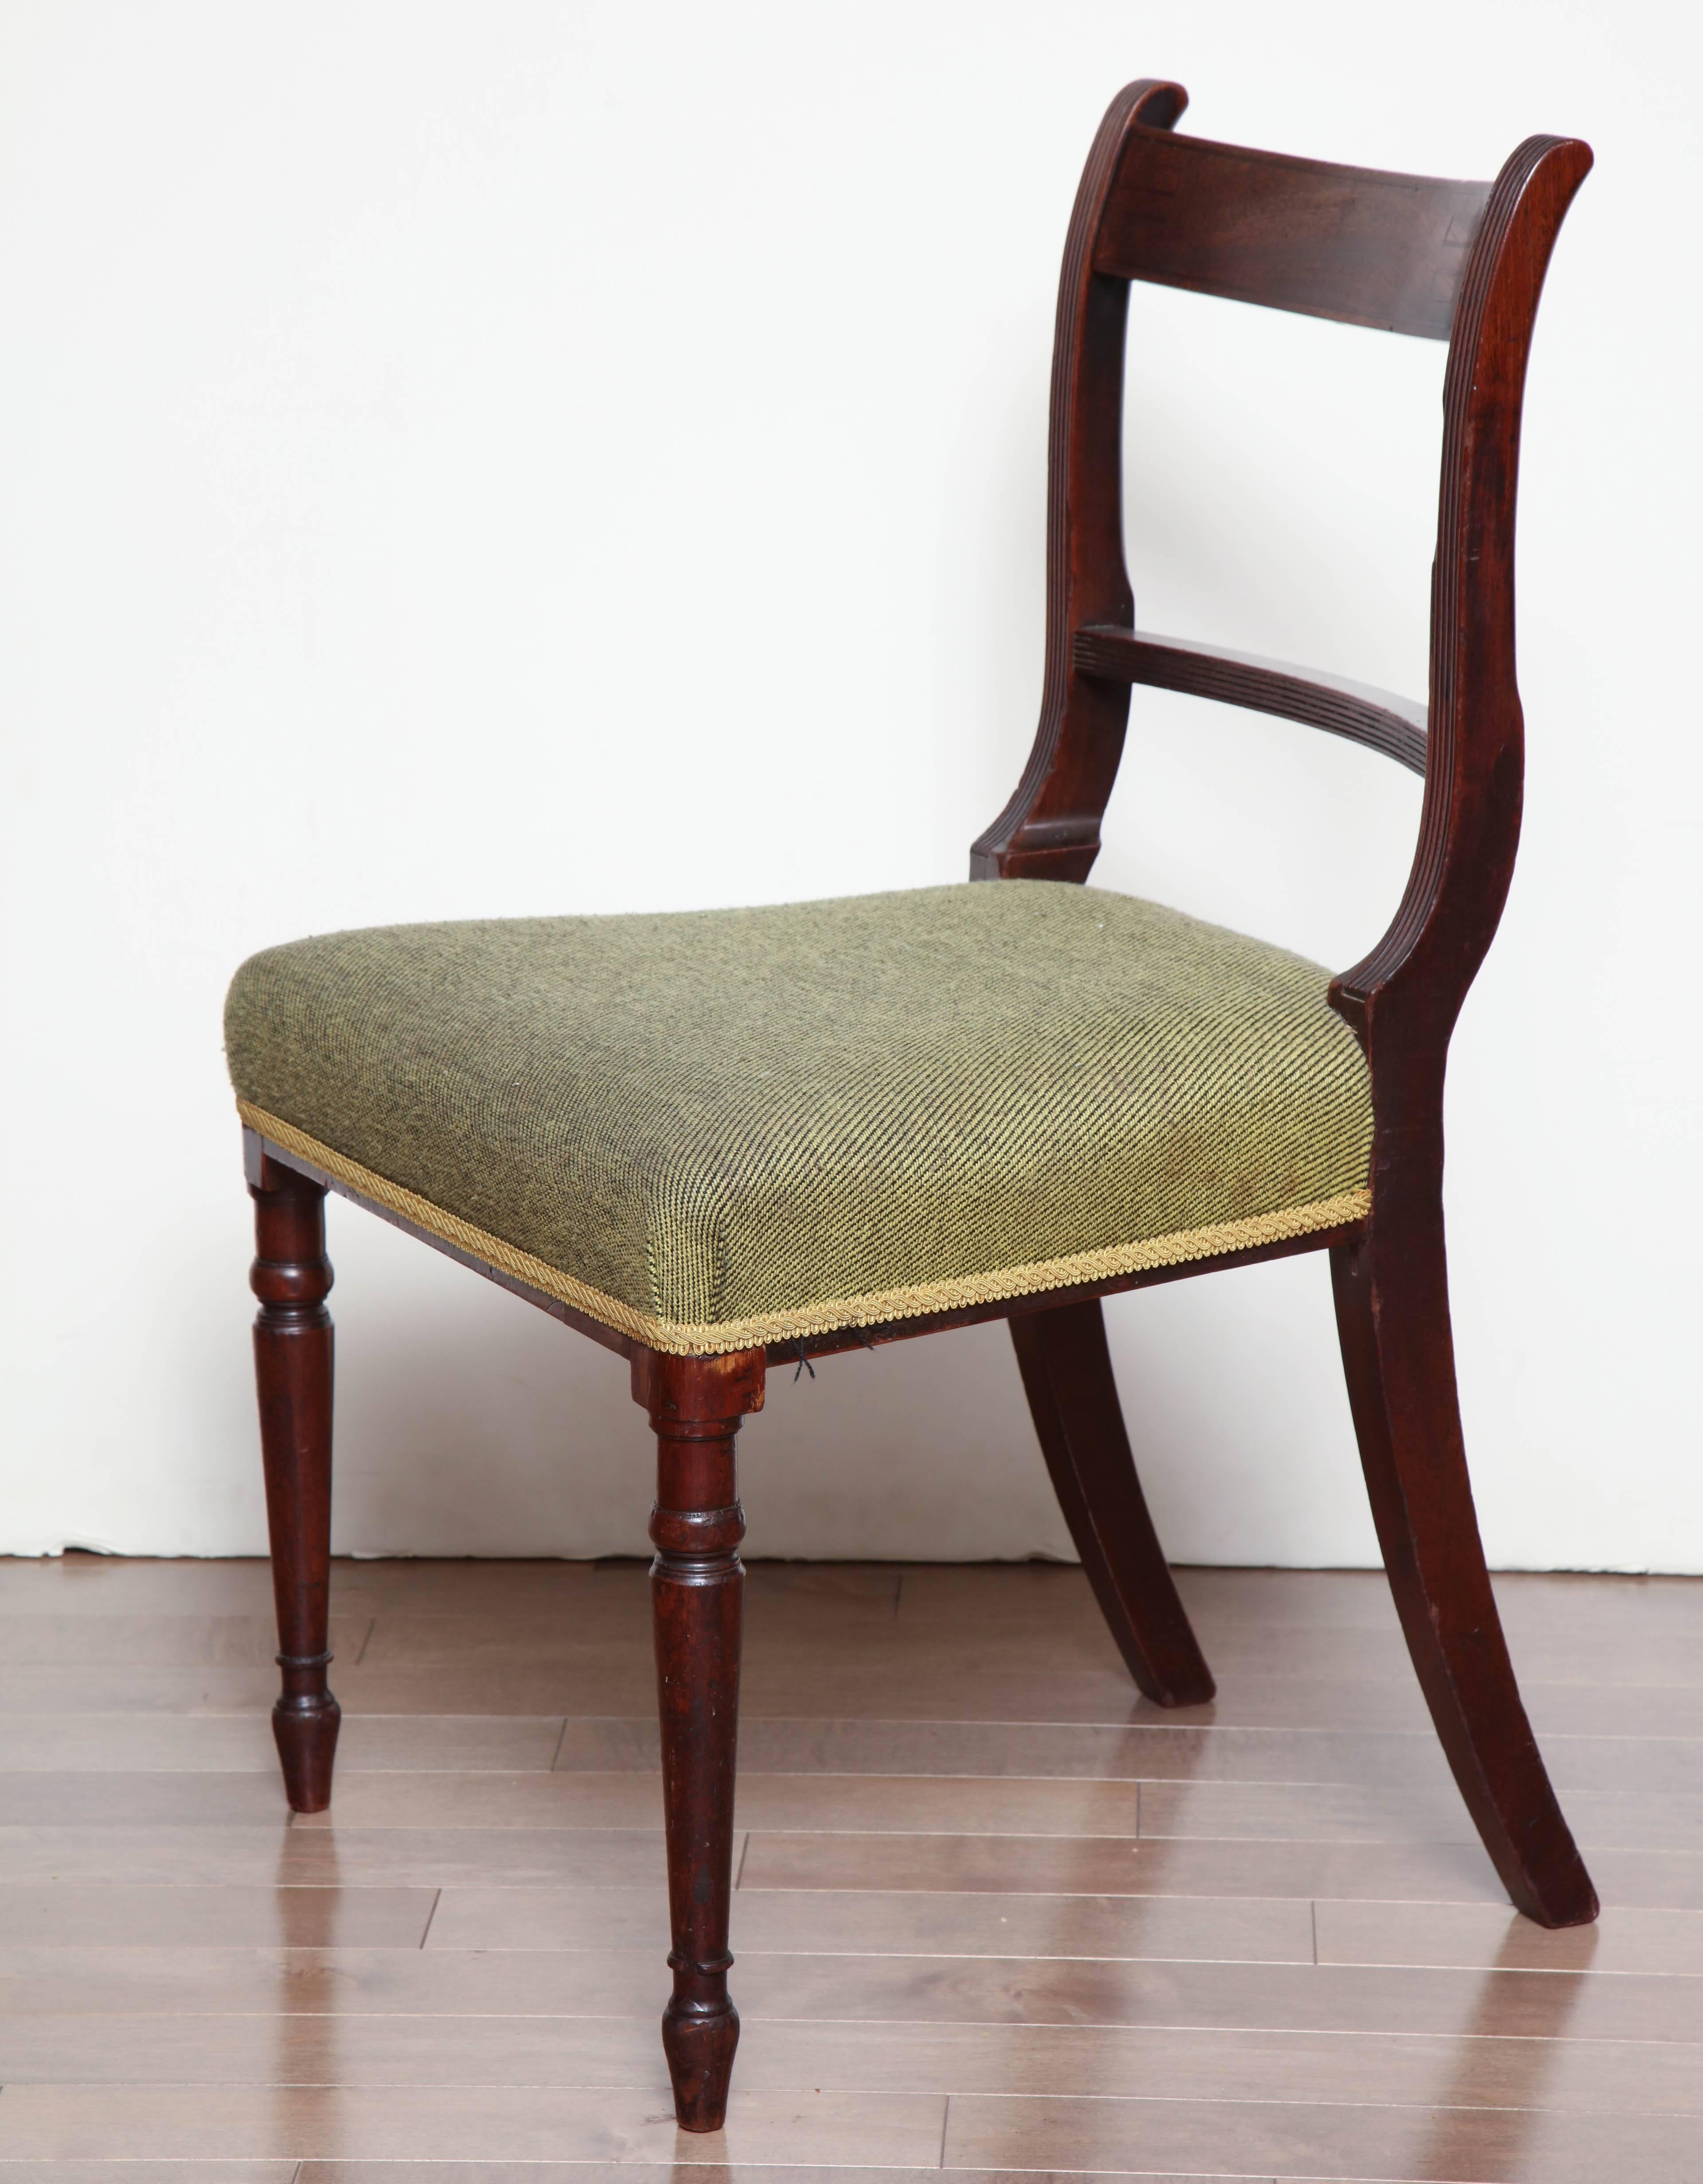 Pair of Irish, mahogany neoclassical side chairs, circa 1810-1820.